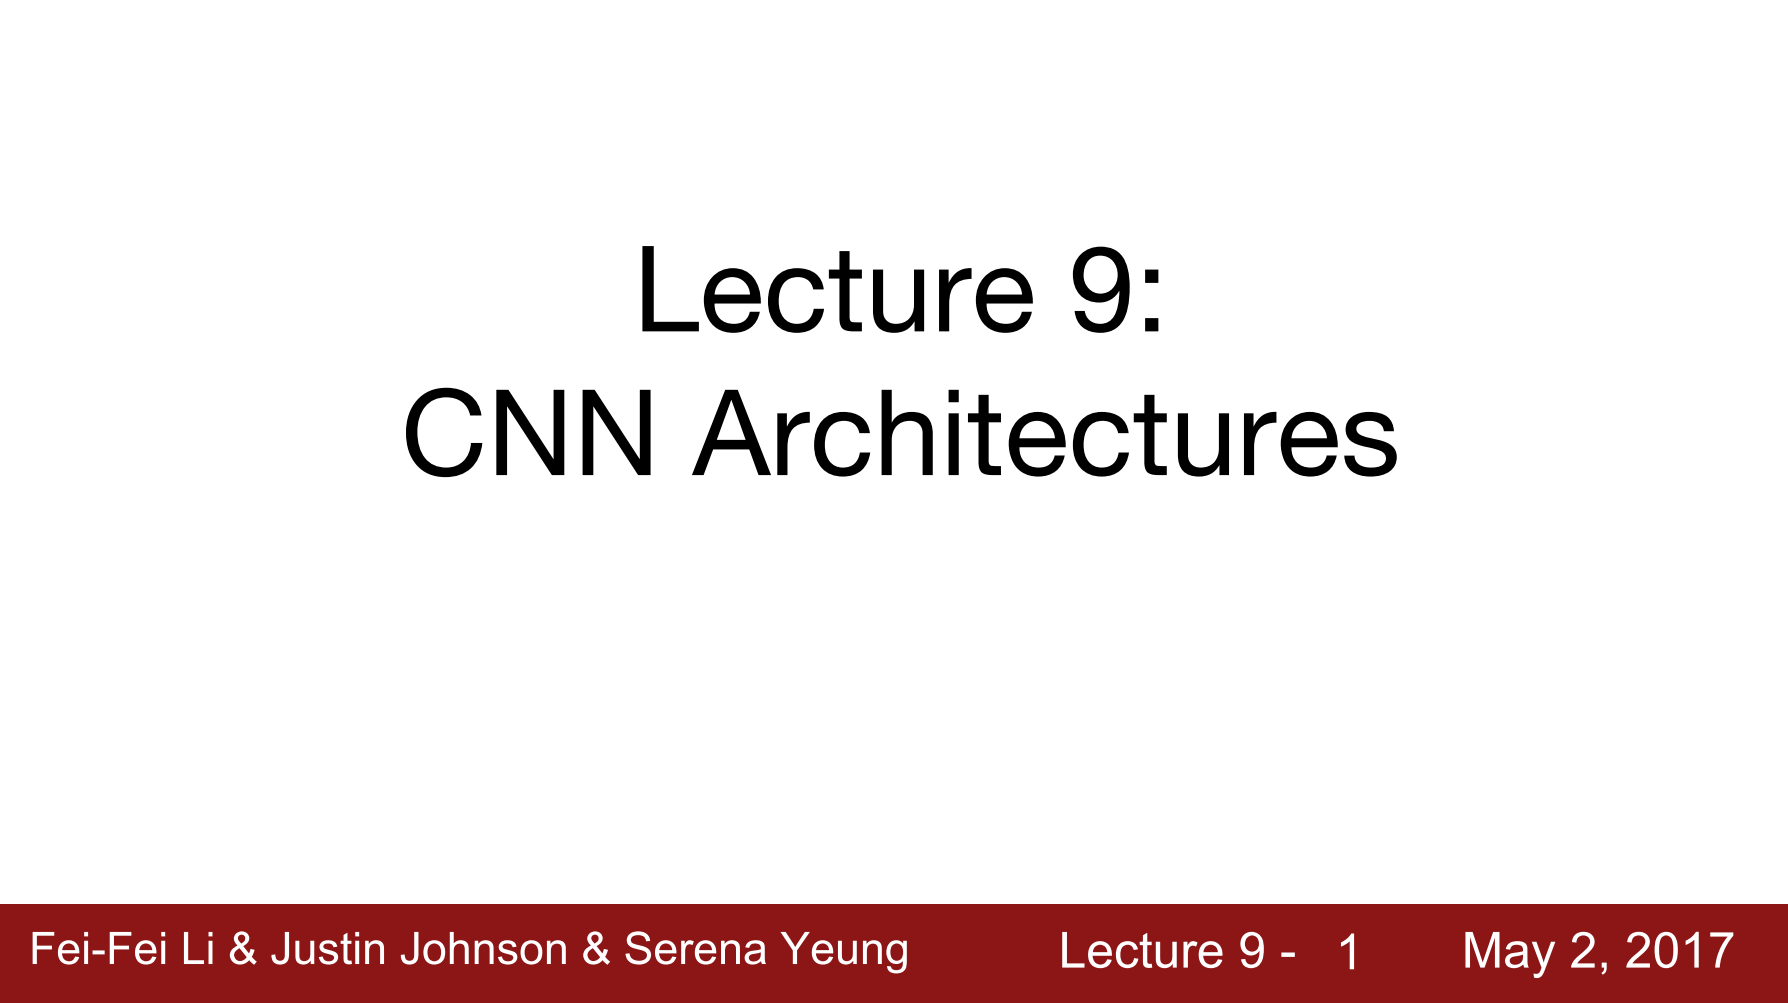 9. CNN Architectures